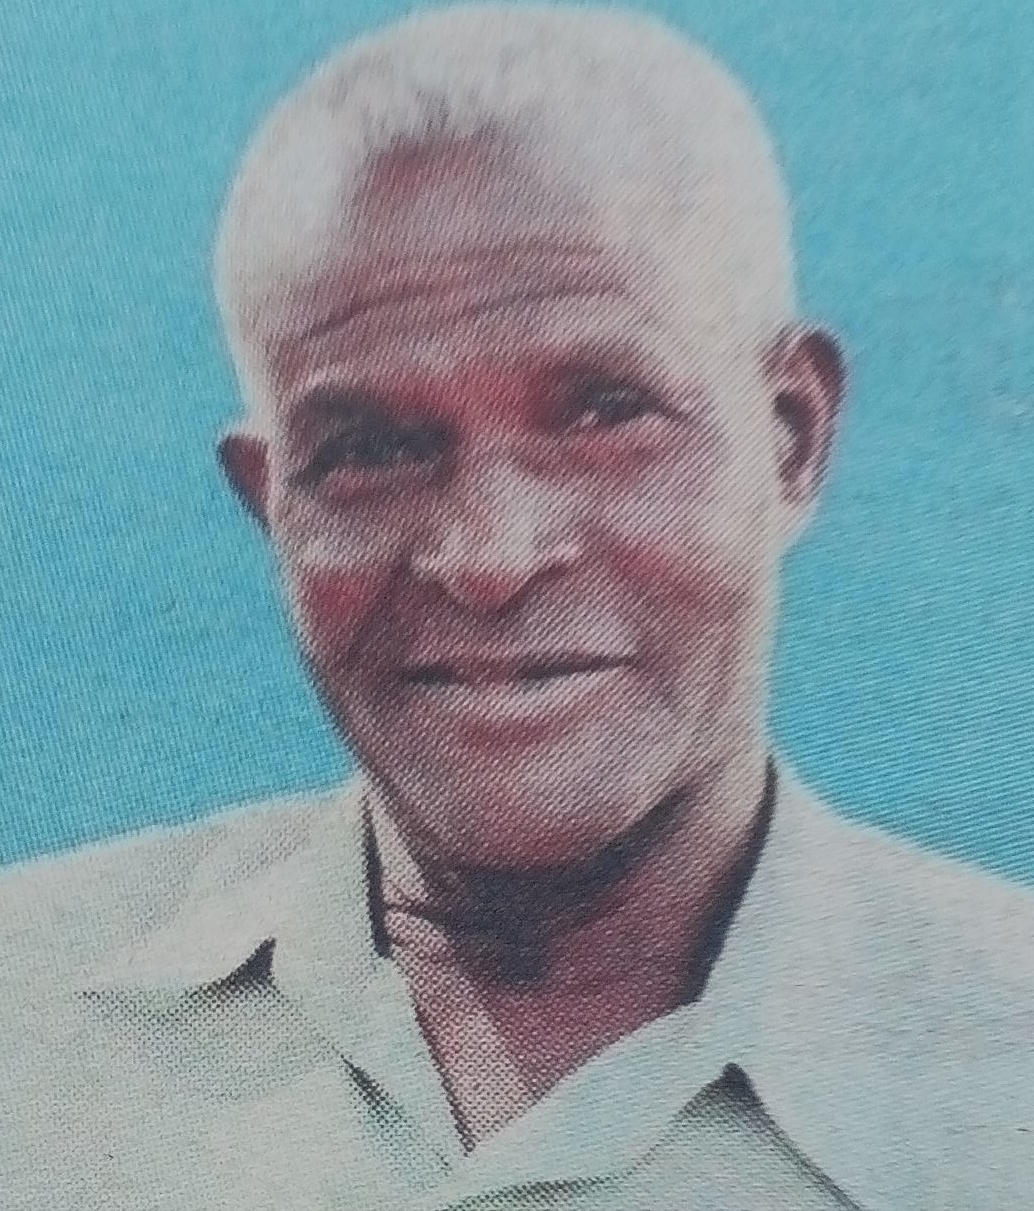 Obituary Image of Henry Onam